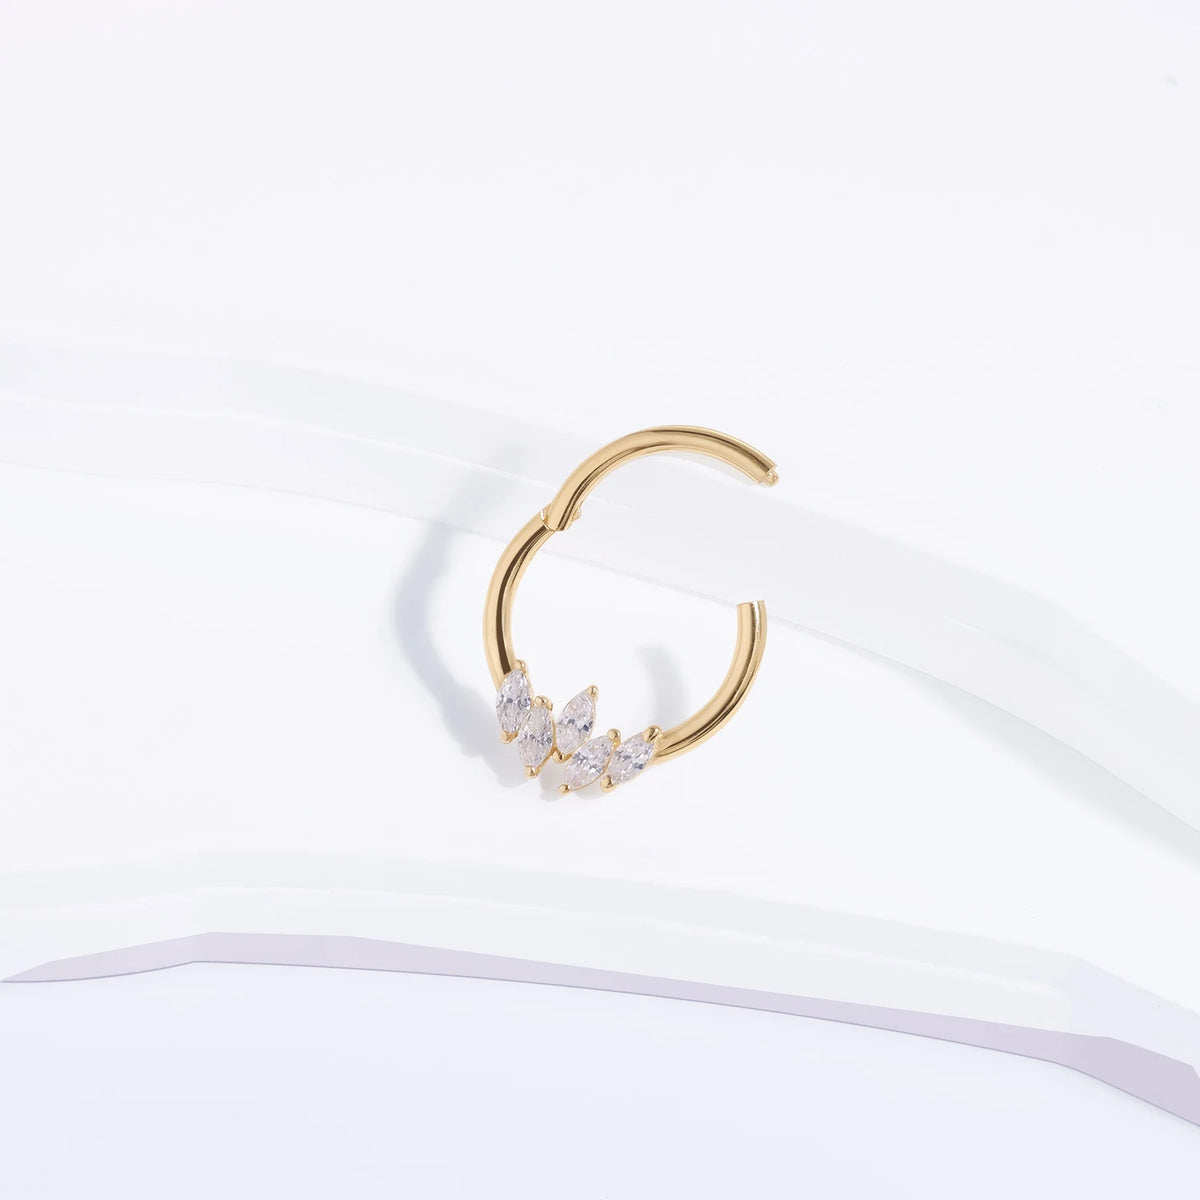 Anneau de septum en or 14 carats avec pierres CZ claires, segment articulé en or massif, anneau de clicker, anneau de nez 16G